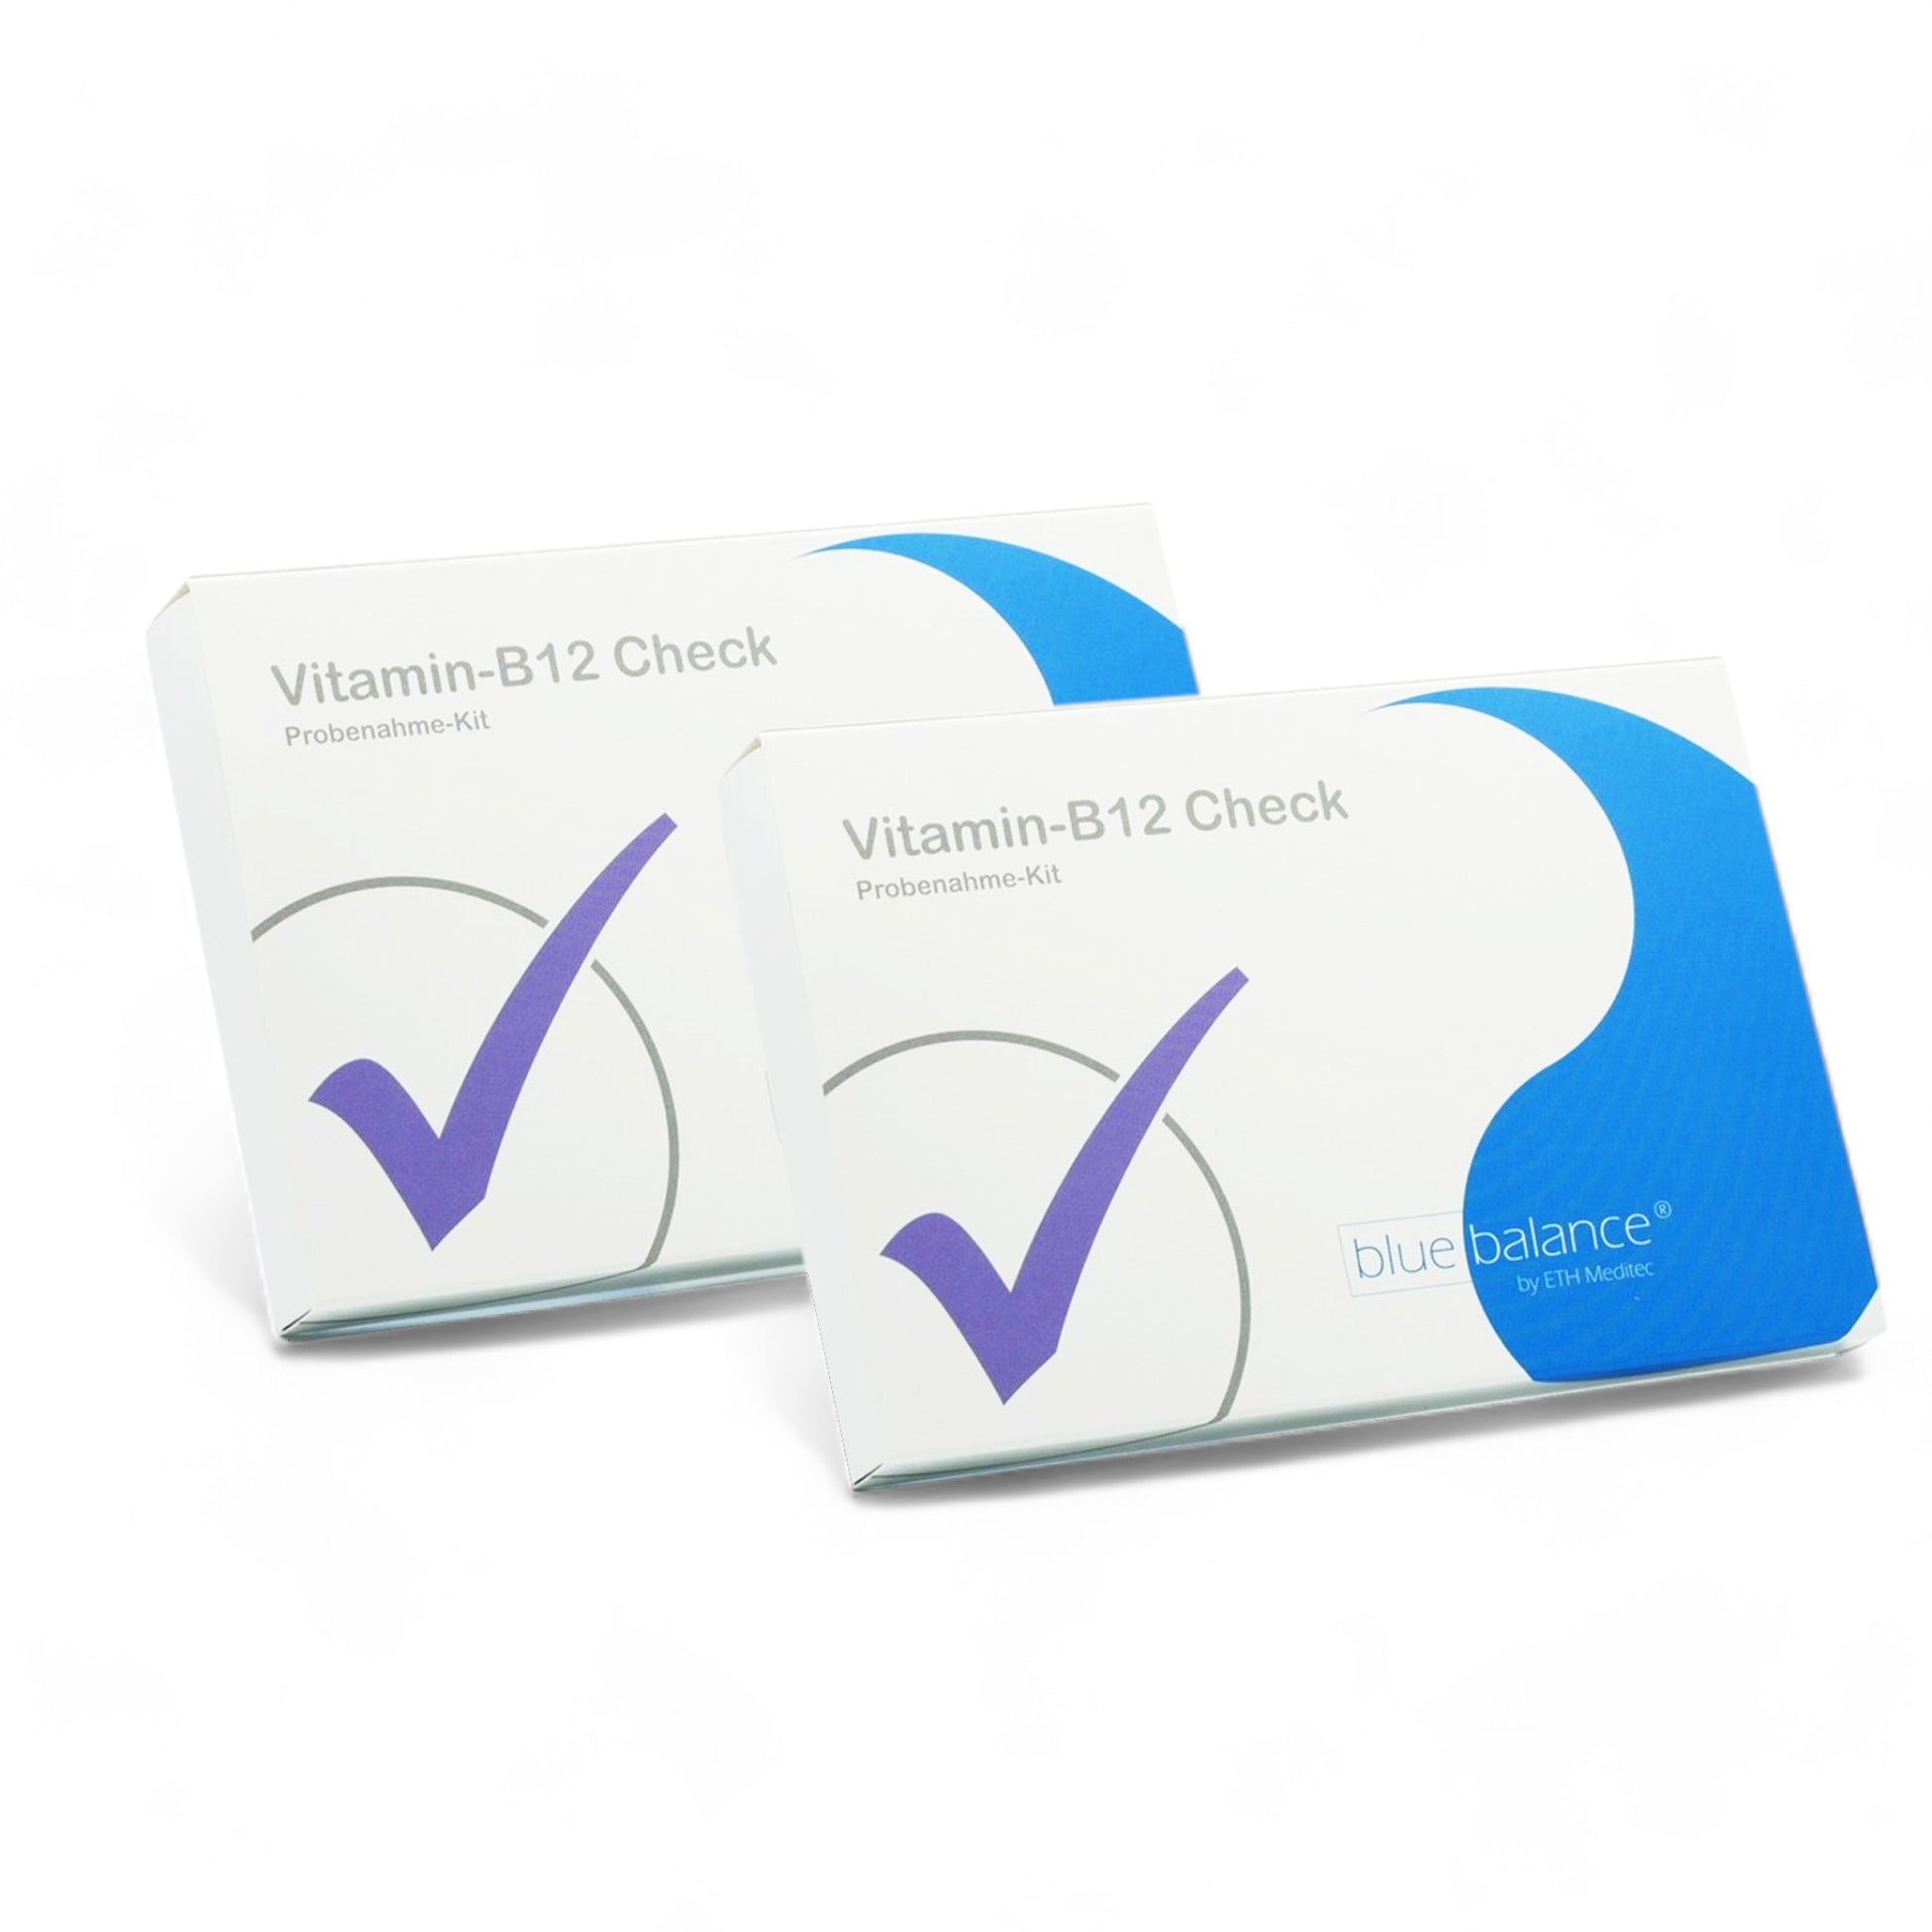 Schnelle und einfache Überprüfung Ihres Vitamin B12-Spiegels mit dem Blue Balance® Test von Eth Meditec.